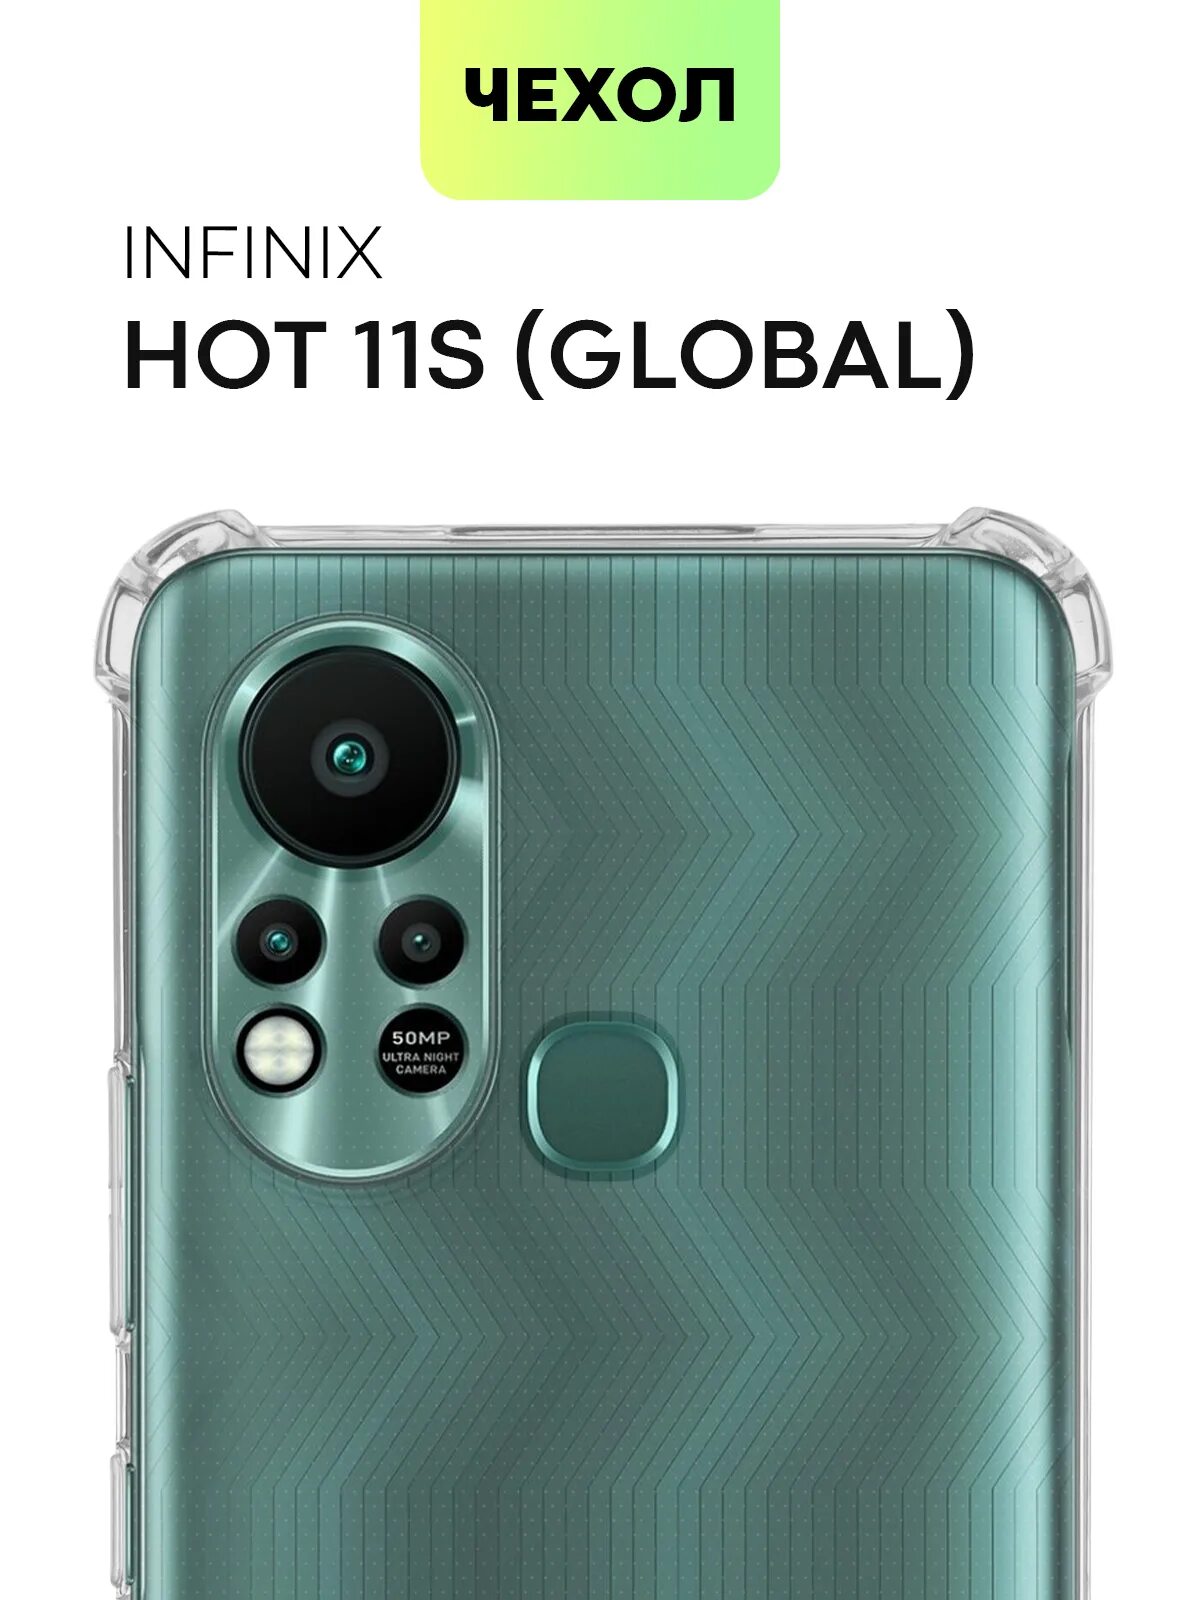 Чехол на телефон Infinix hot 11 s. Infinix hot 11s. Infinix hot 11s NFC чехол. Инфиникс хот 11 s NFC.